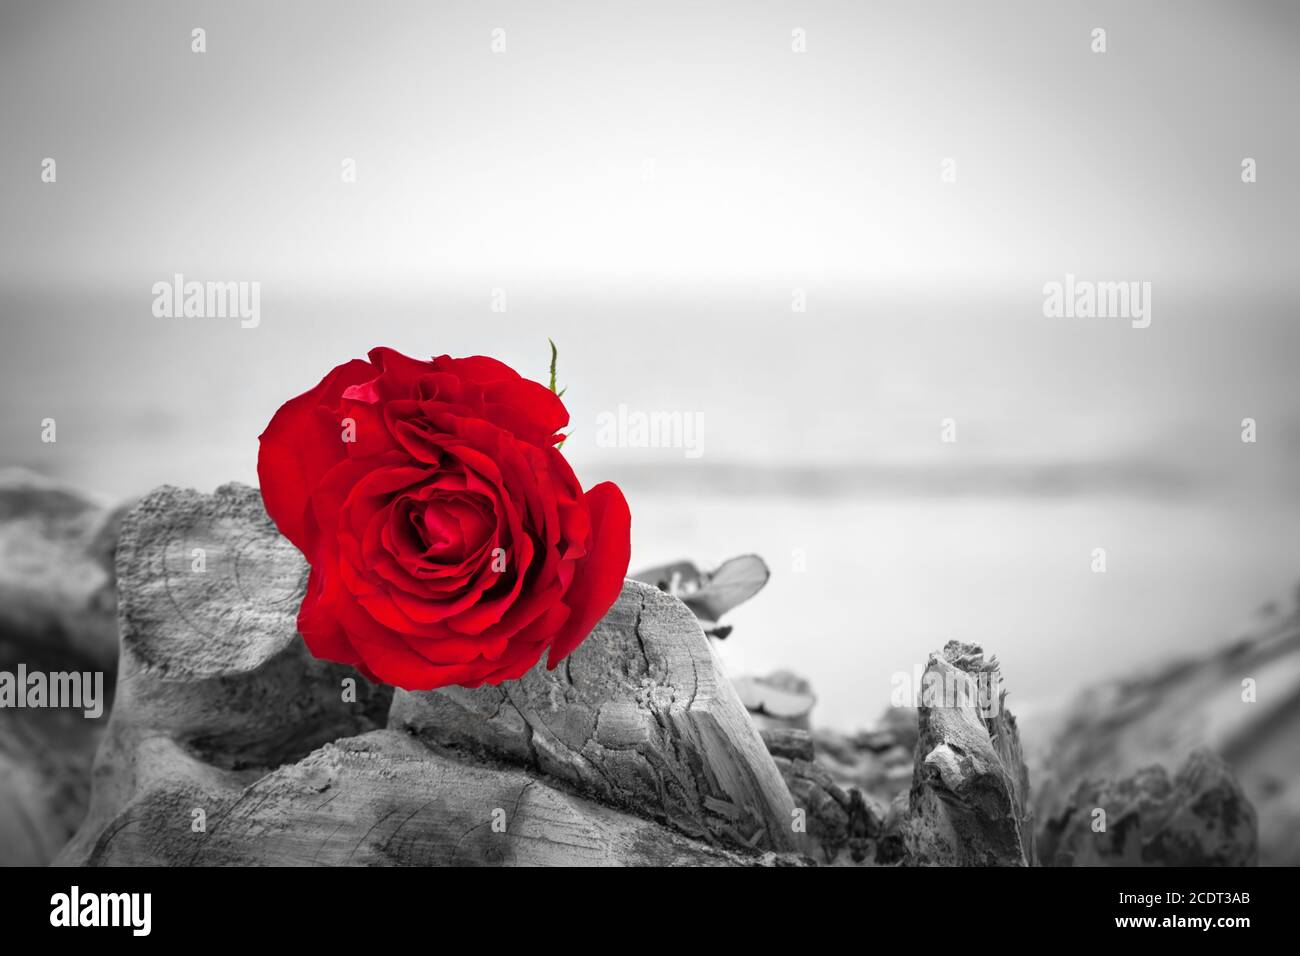 Rote Rose am Strand. Farbe gegen Schwarz und Weiß. Liebe, Romantik, melancholische Konzepte. Stockfoto